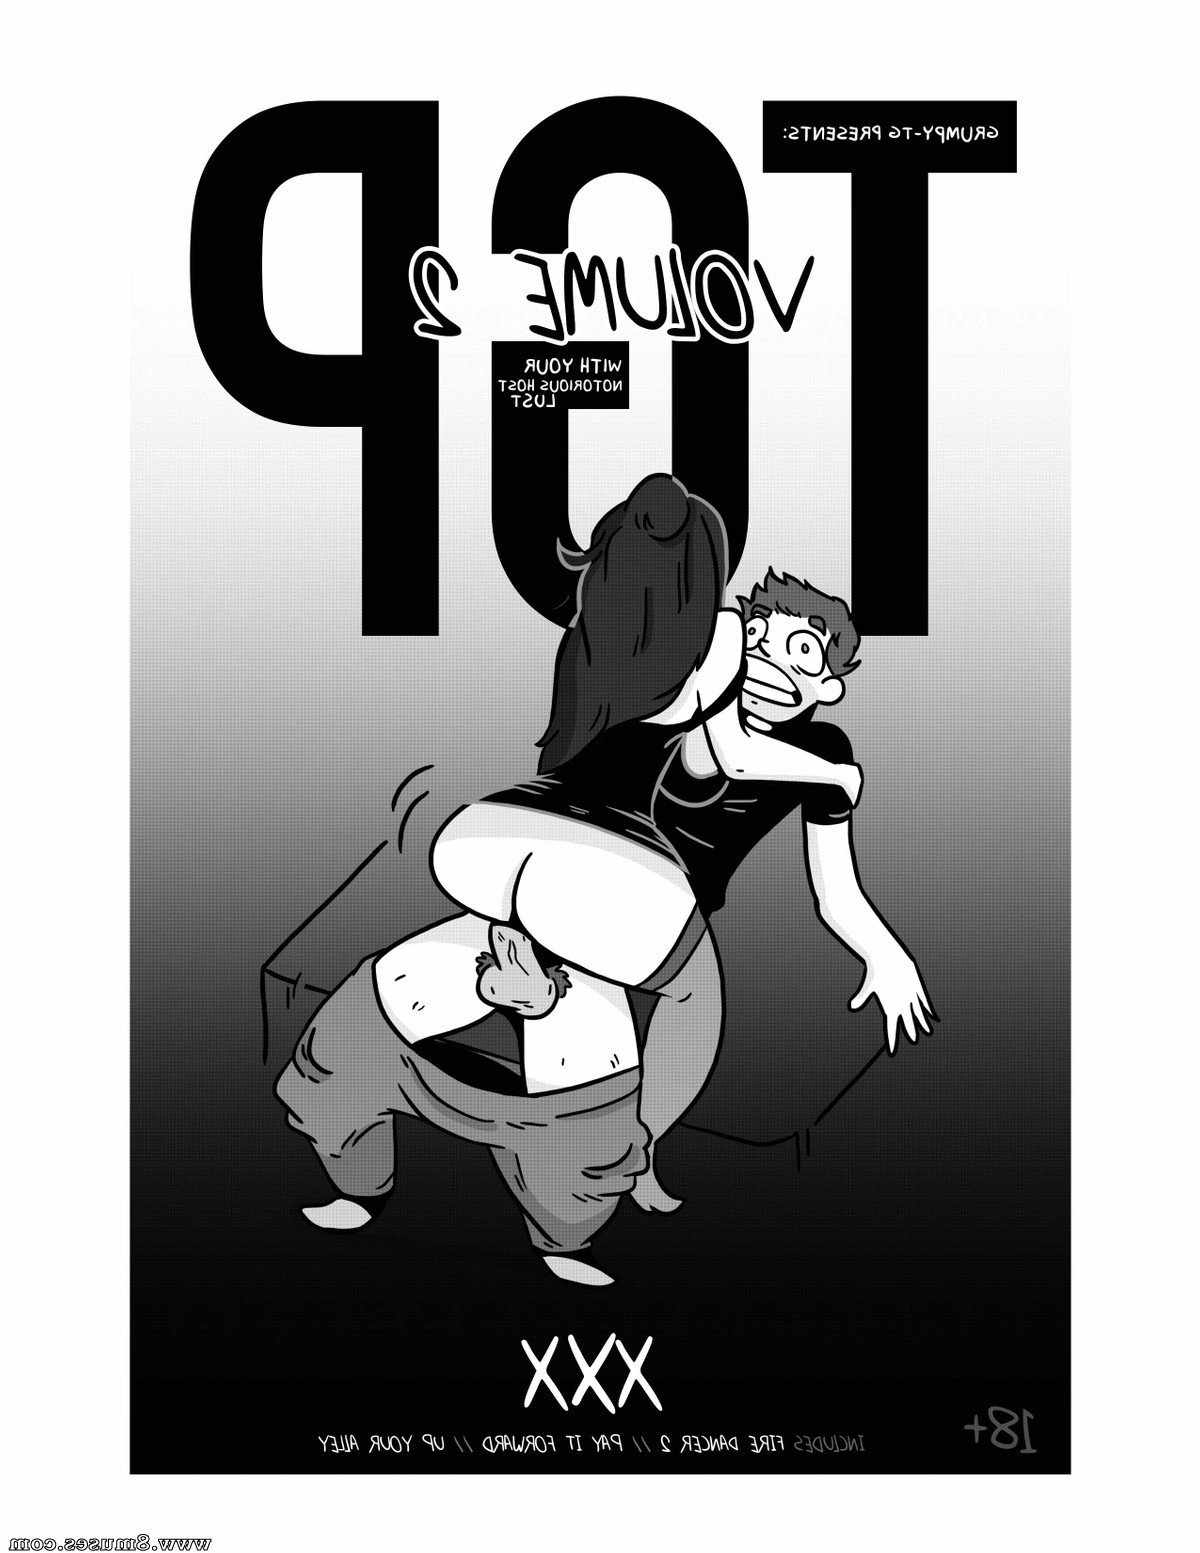 TG-Comics/Grumpy-TG Grumpy-TG__8muses_-_Sex_and_Porn_Comics_2.jpg